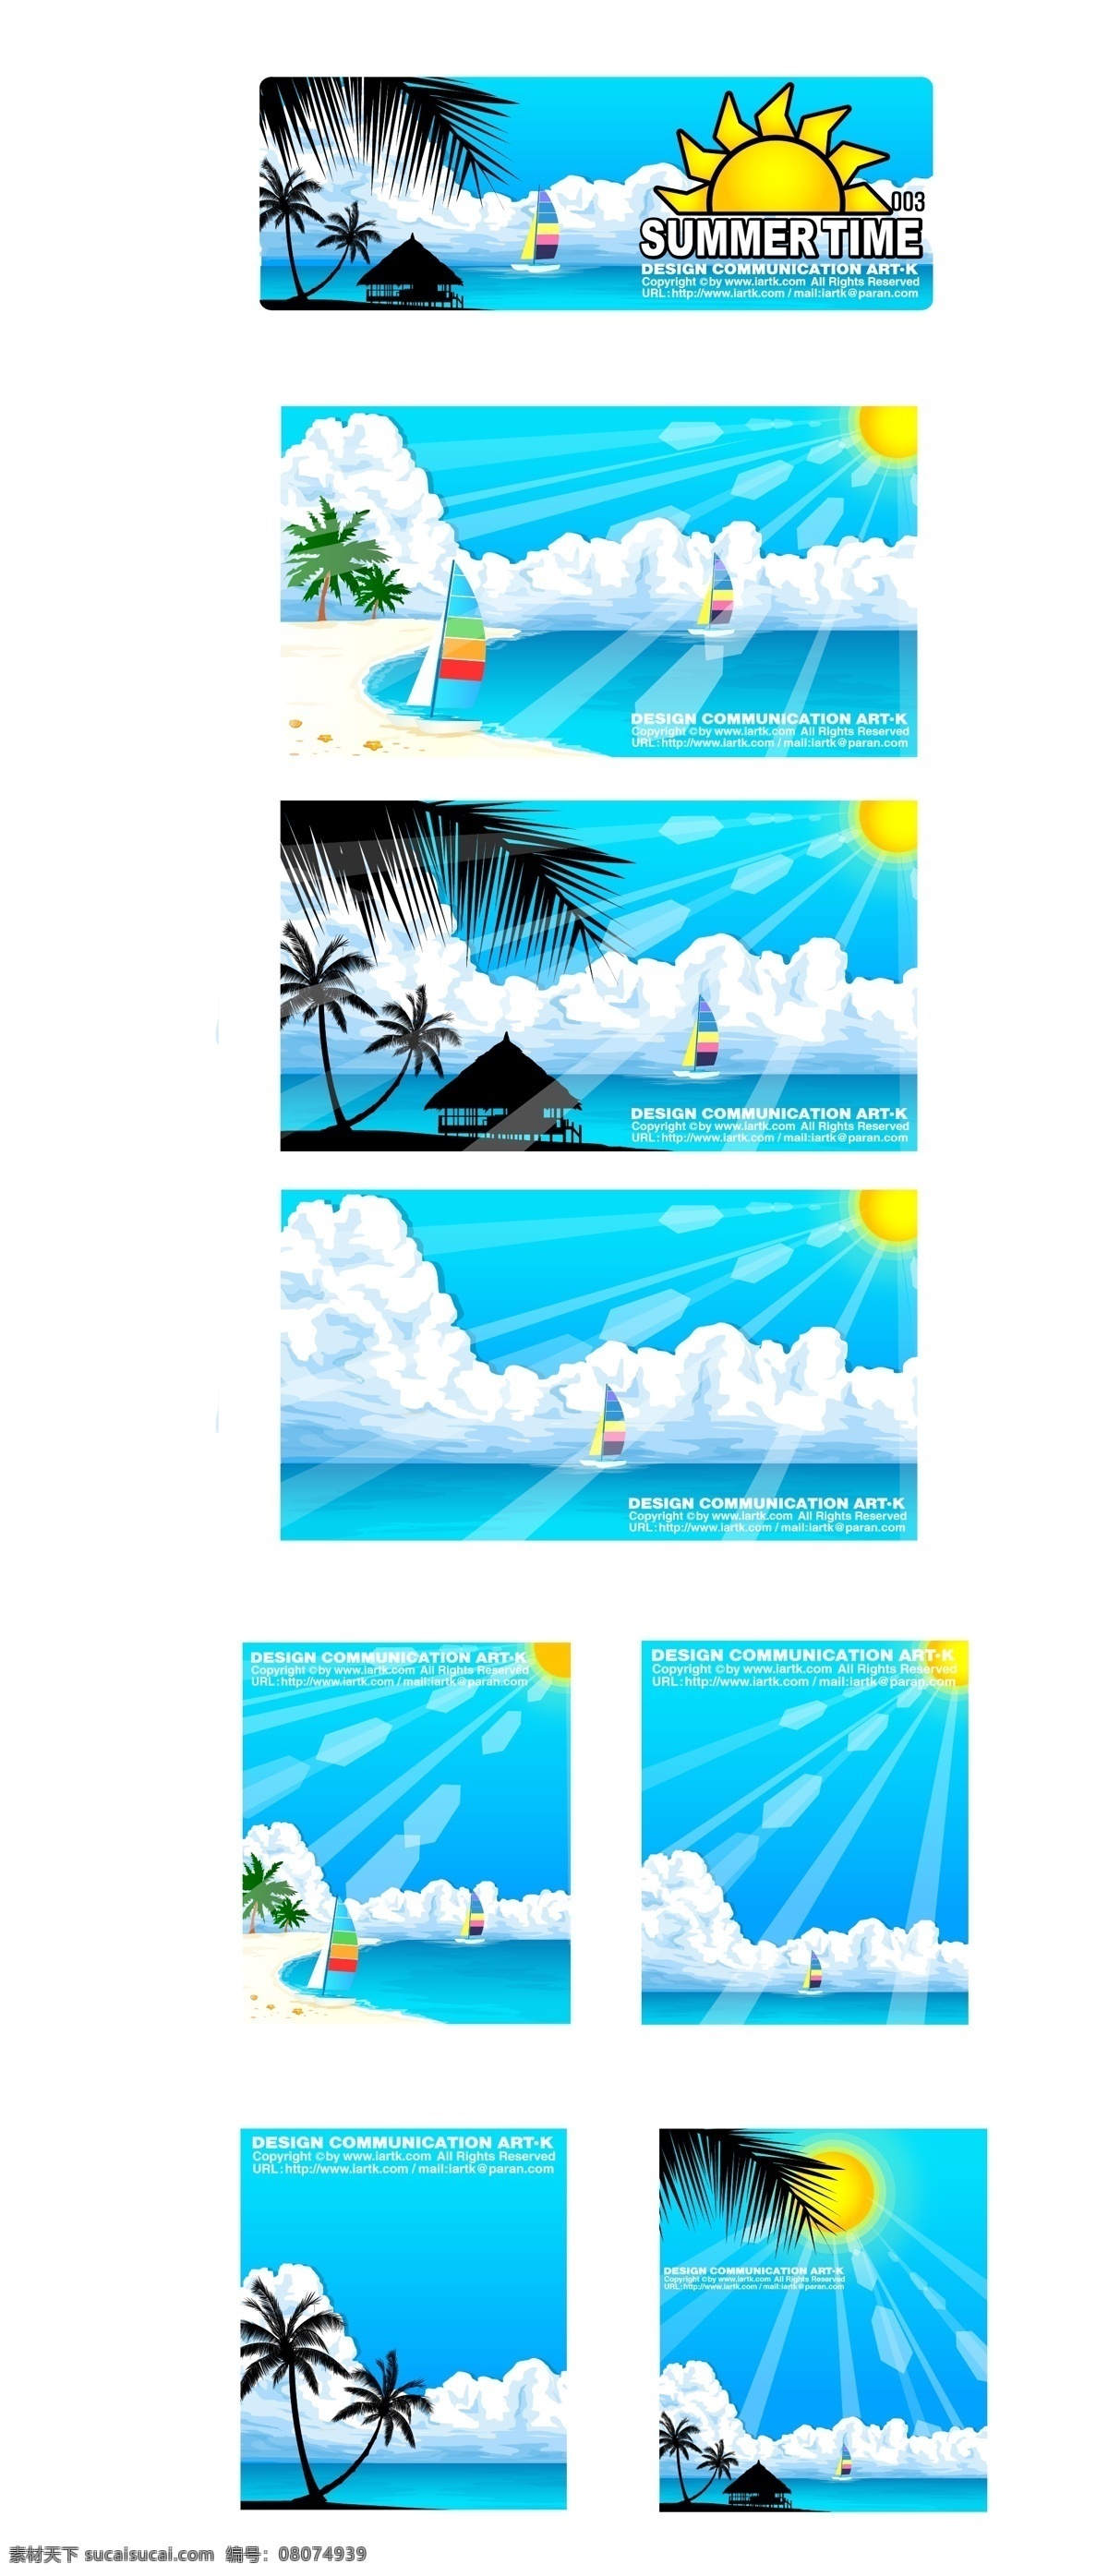 天蓝色 海滩 卡通 矢量图 插画设计 大海 帆船 背景 太阳 天蓝色背景 阳光 椰子树 其他矢量图